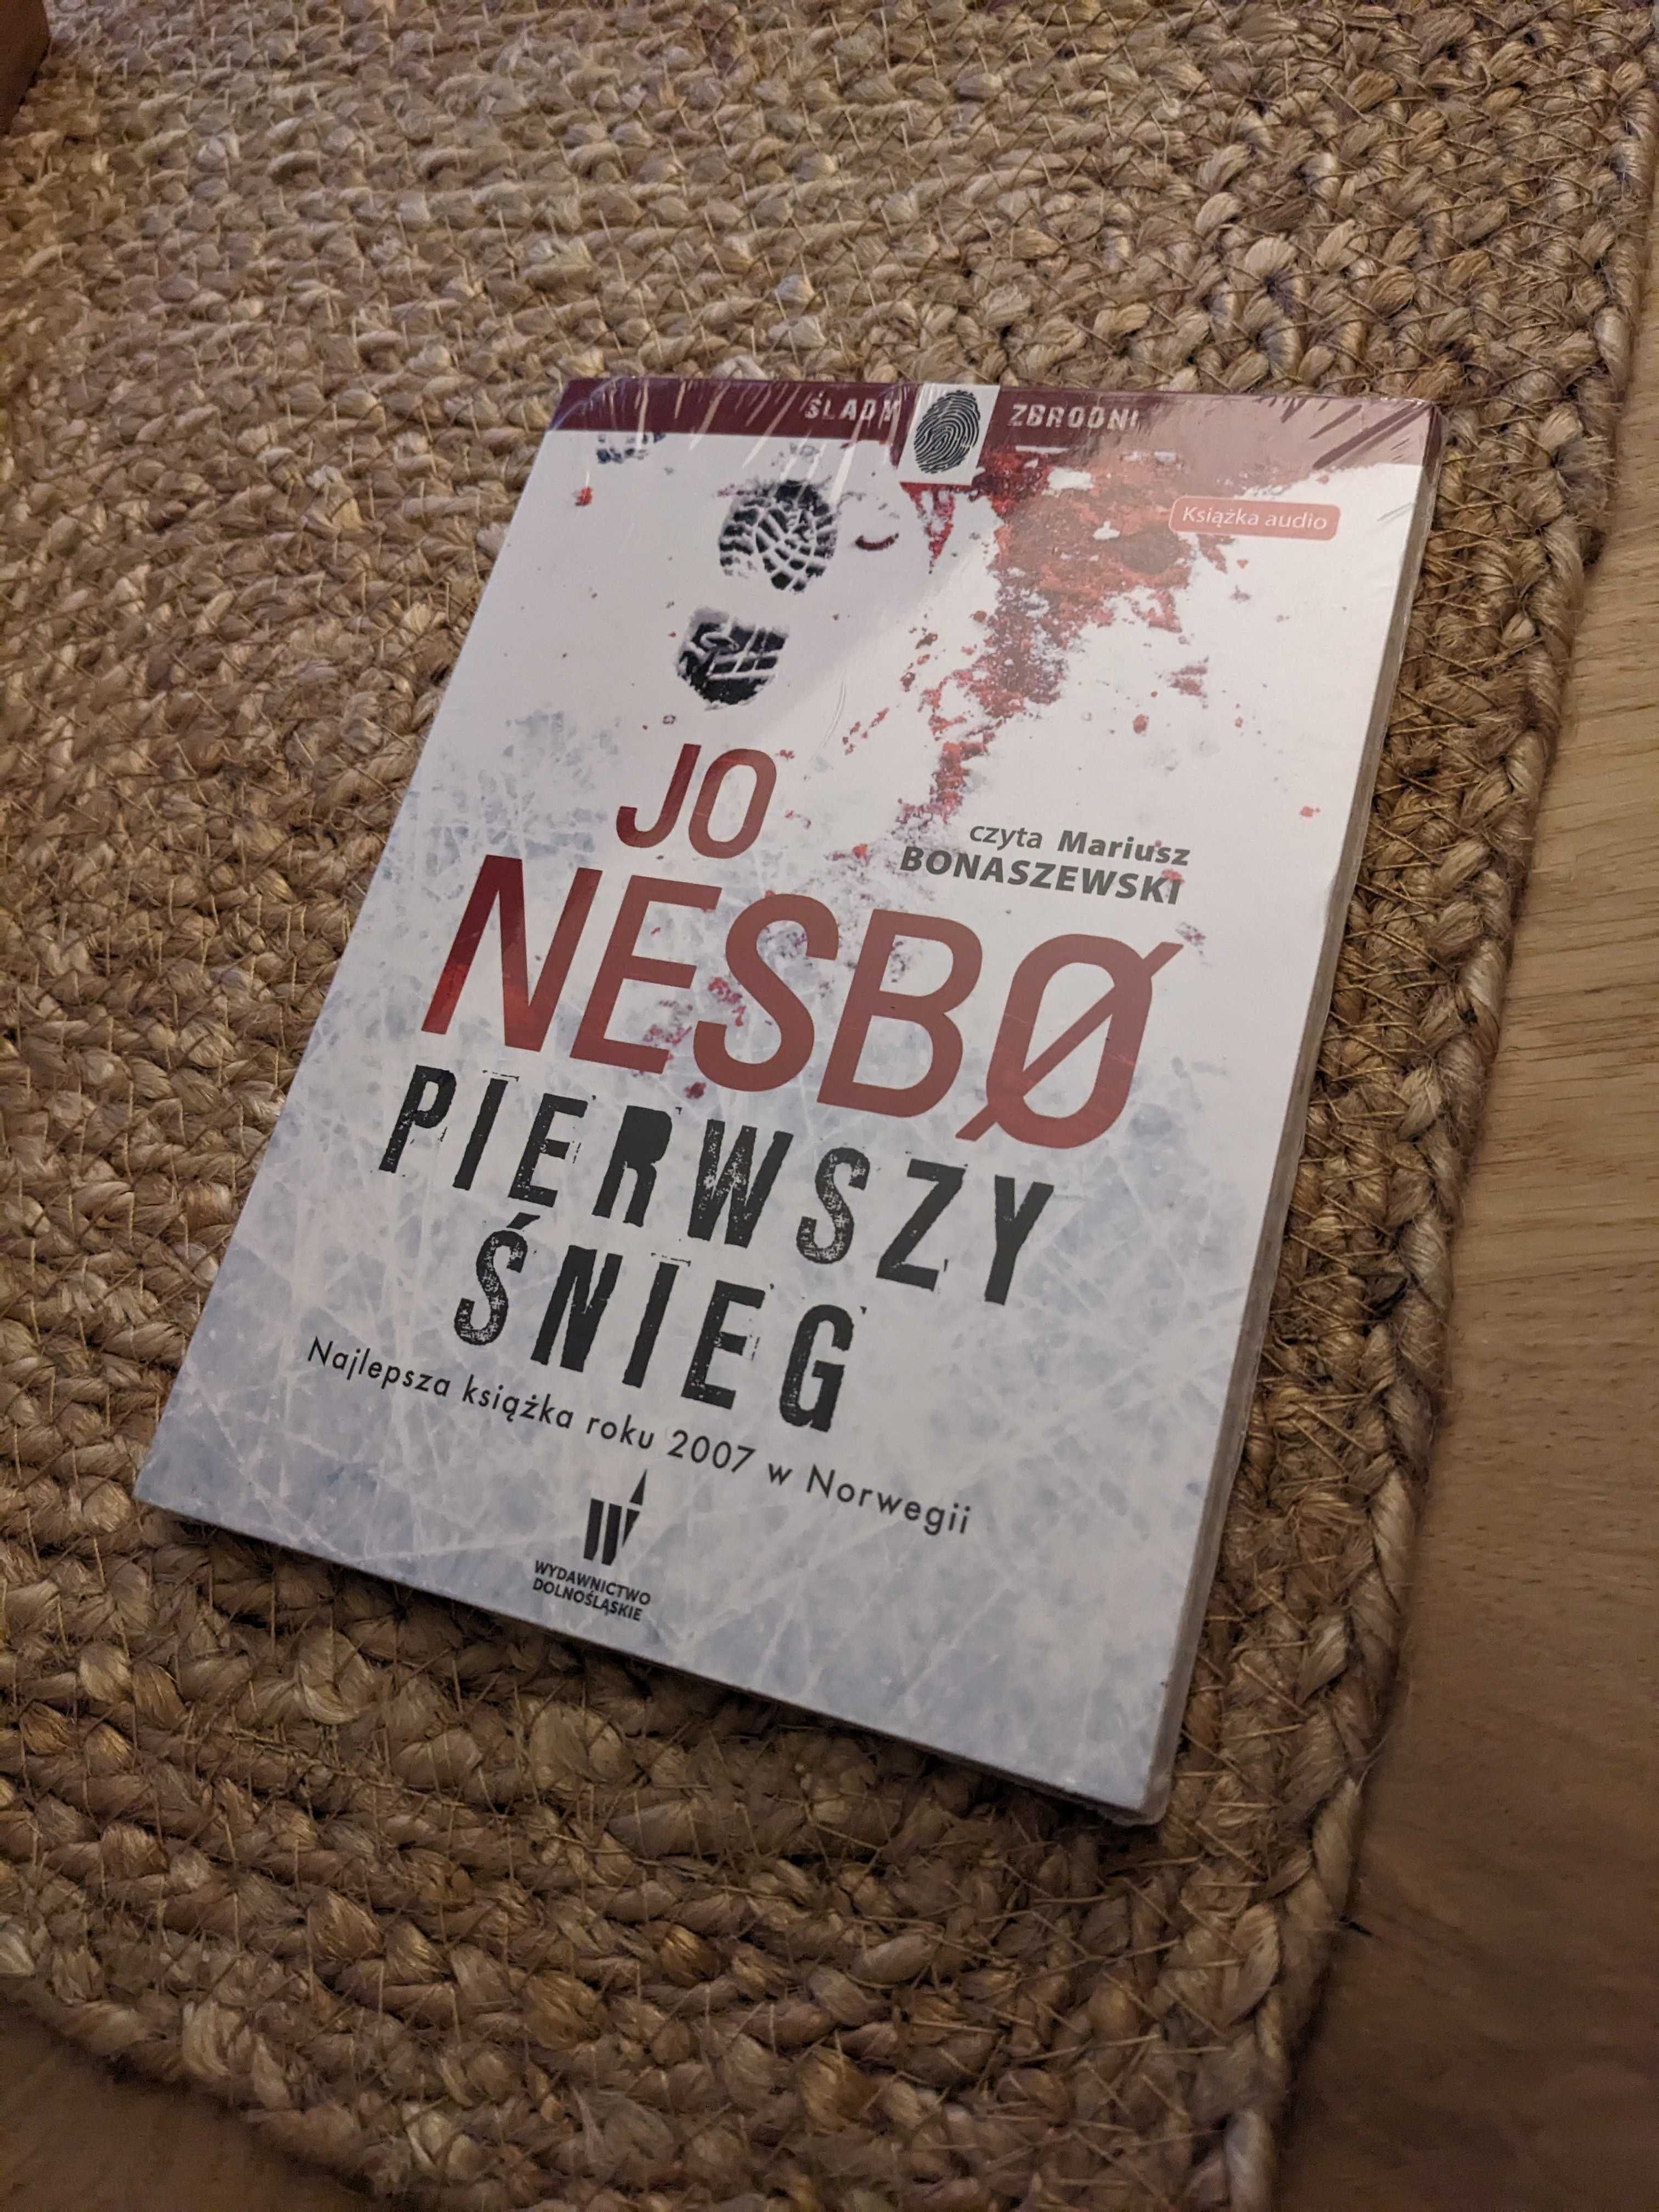 Jo Nesbo - "Pierwszy śnieg"  Audiobook